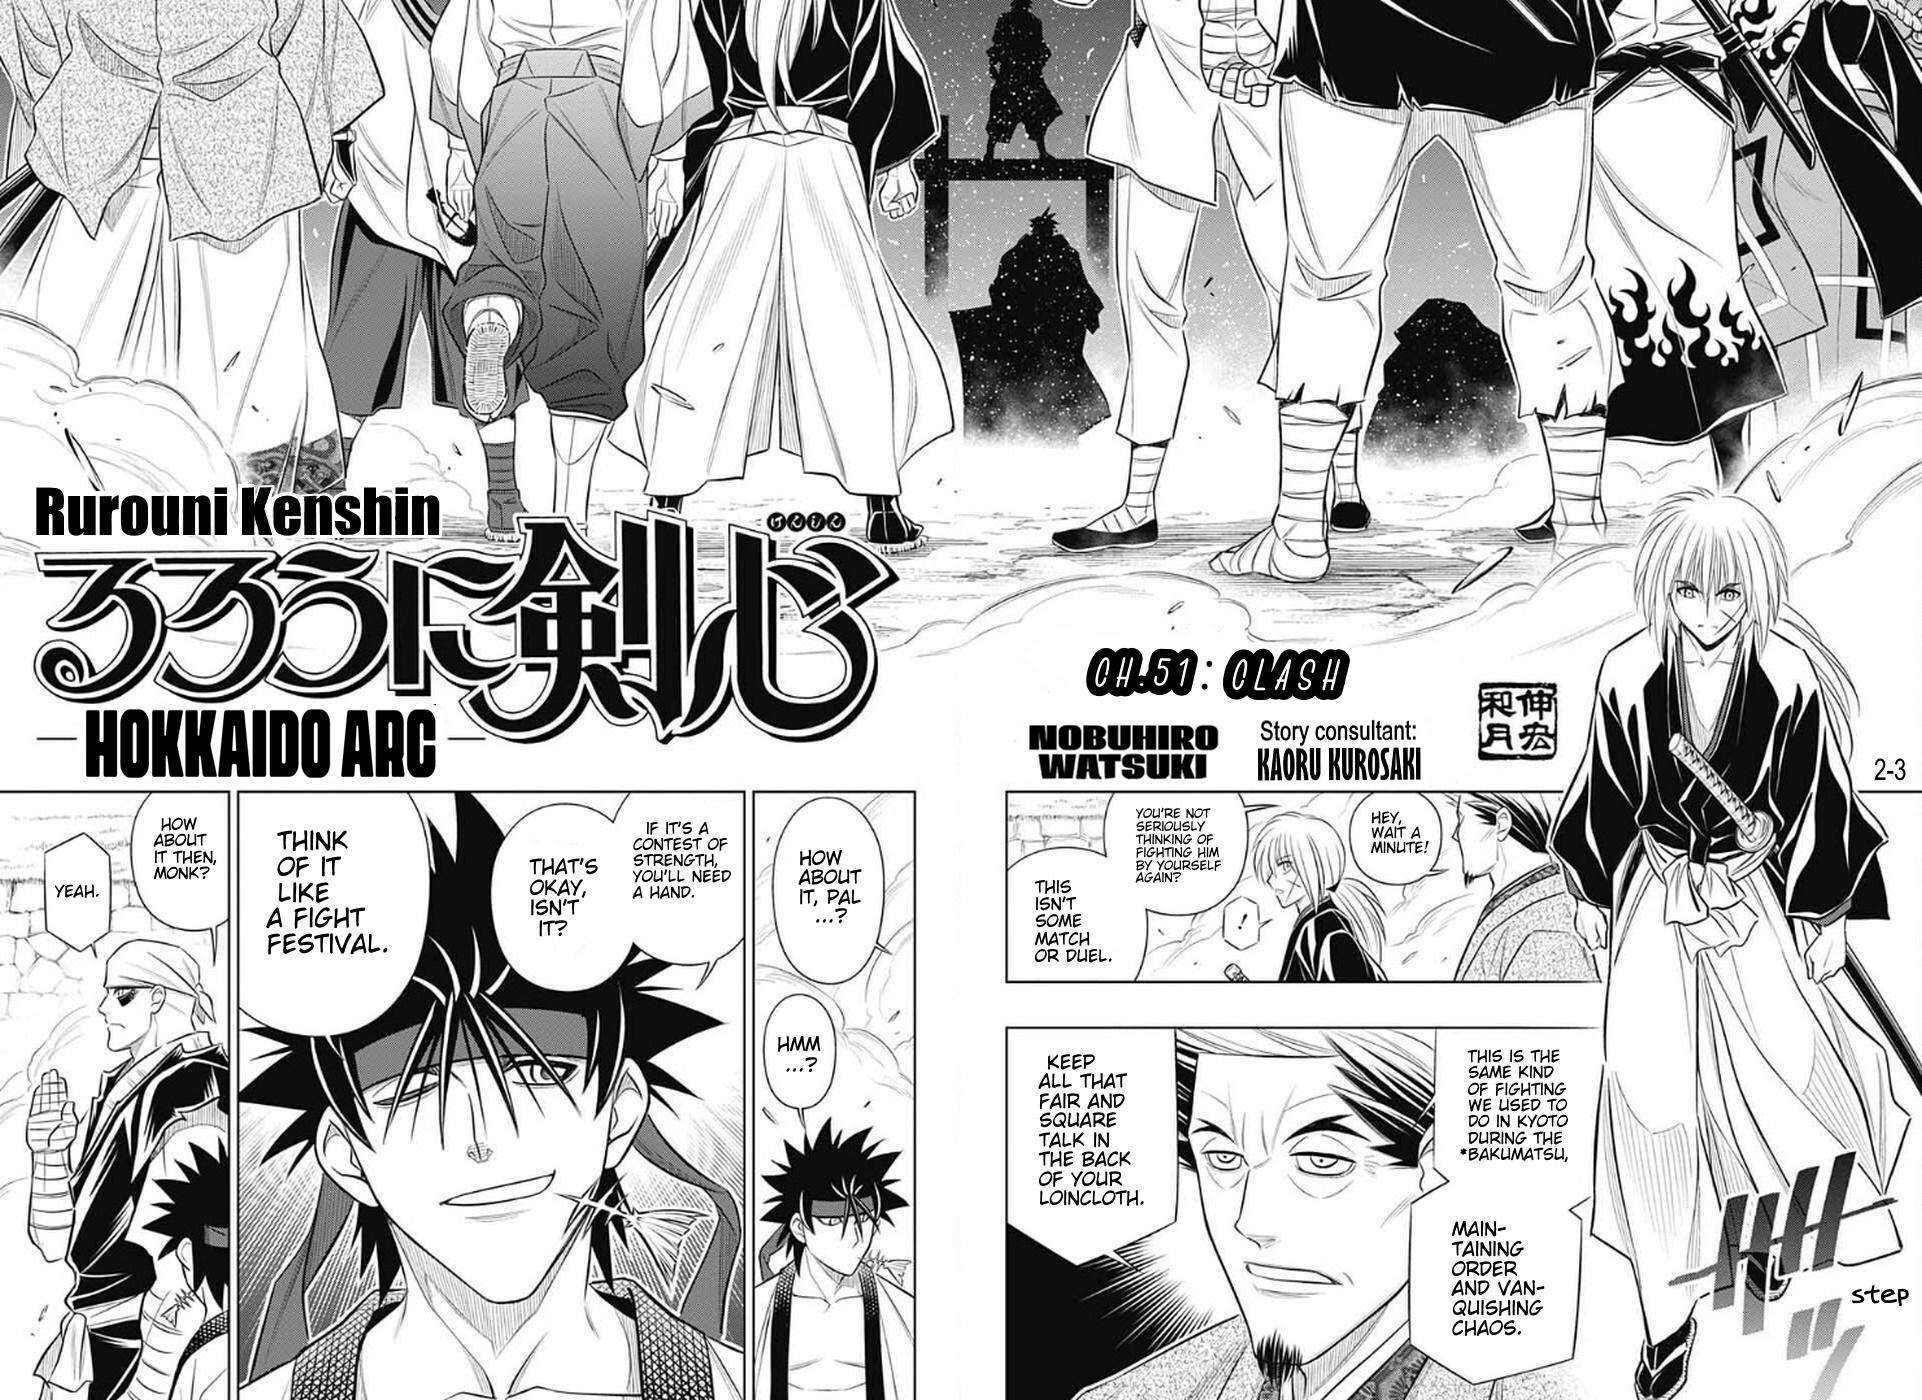 Rurouni Kenshin: Hokkaido Arc - chapter 51 - #2